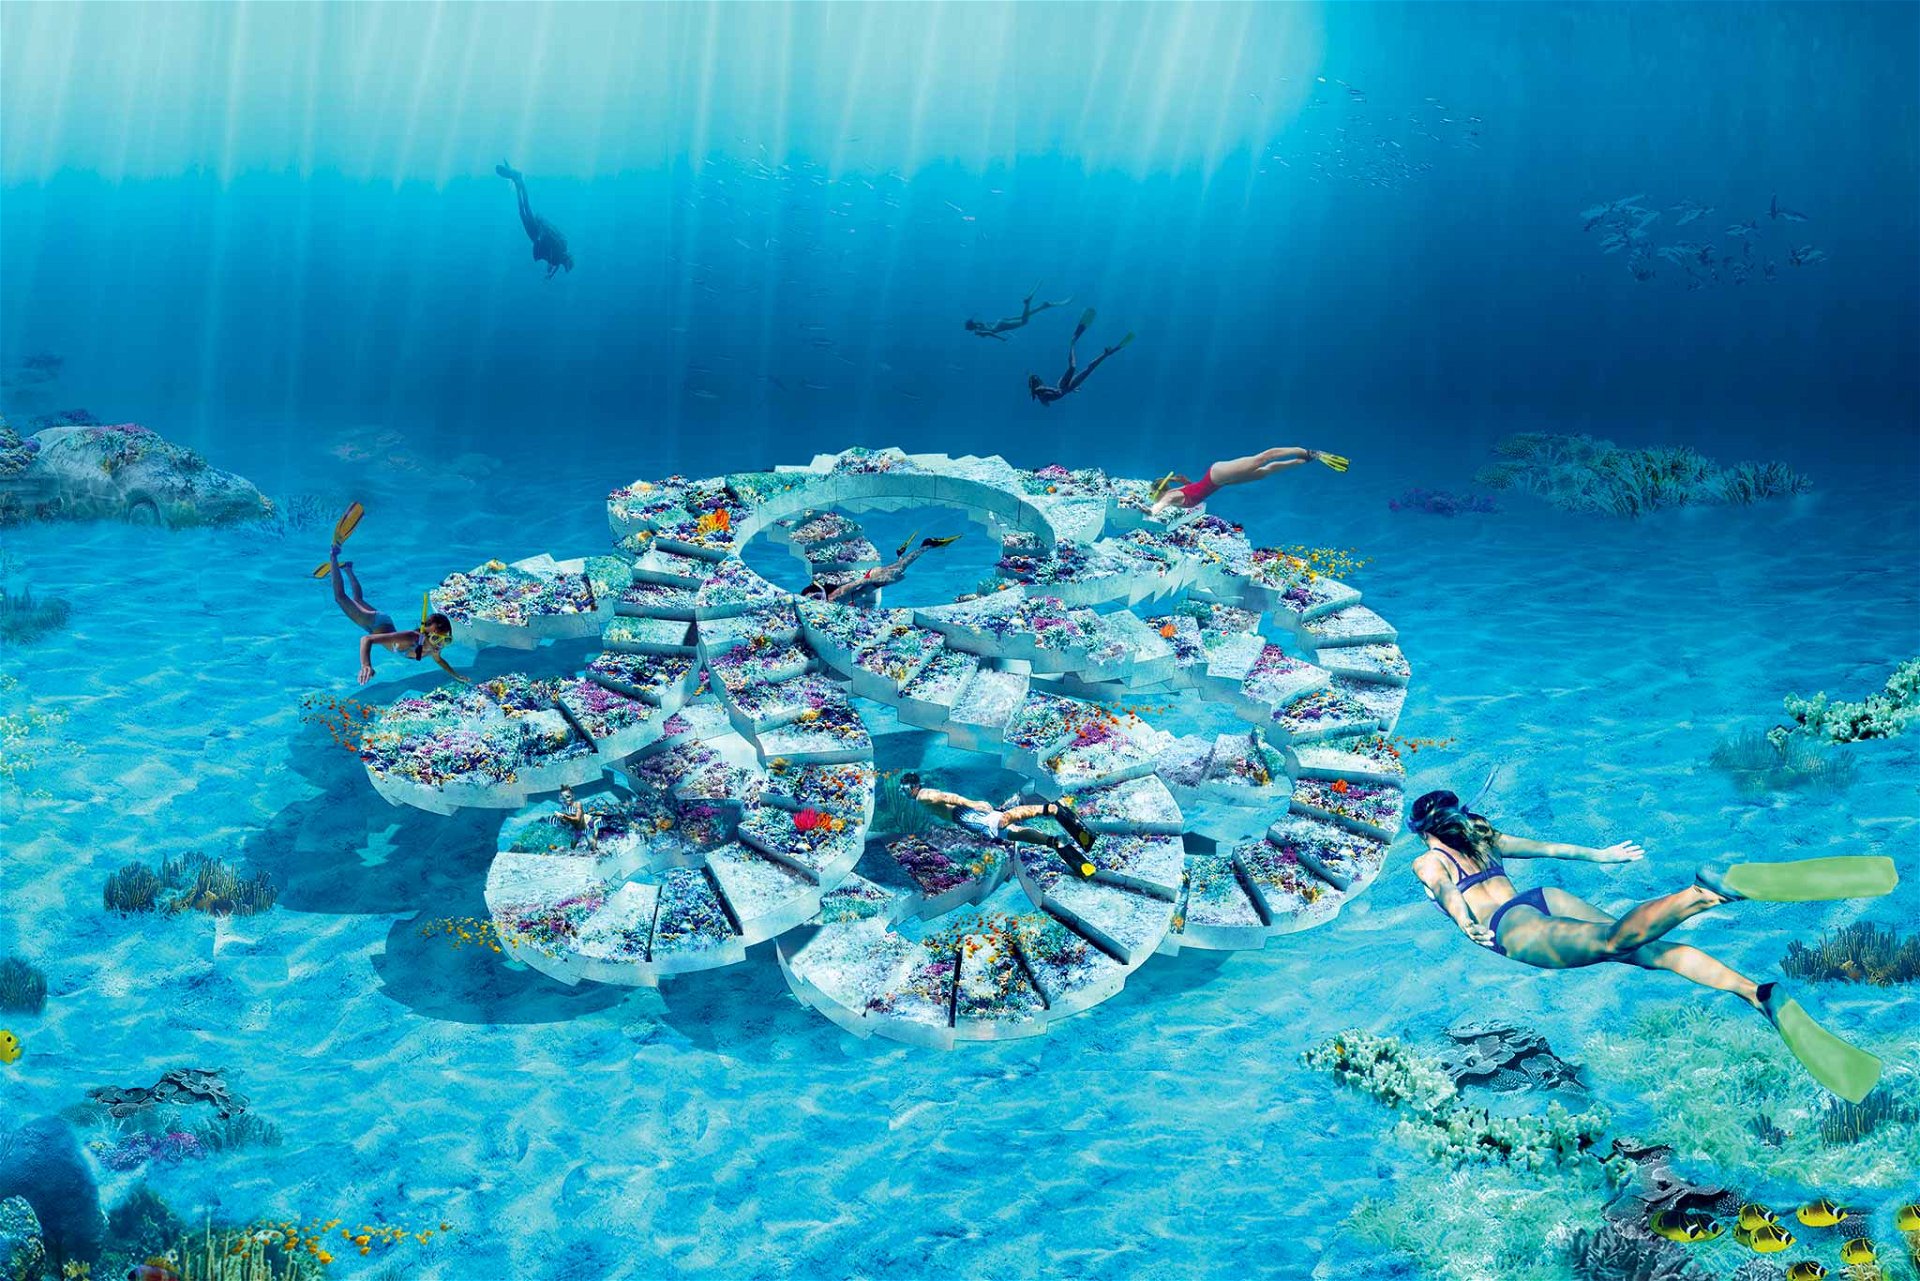 Submarine Architektur Der an M. C. Escher erinnernde Unterwasserpavillon »Reefline« von OMA, Charlotte Taylor und Nicholas Préaud wird digital verkauft und ist physisch ein Korallenriff. oma.com